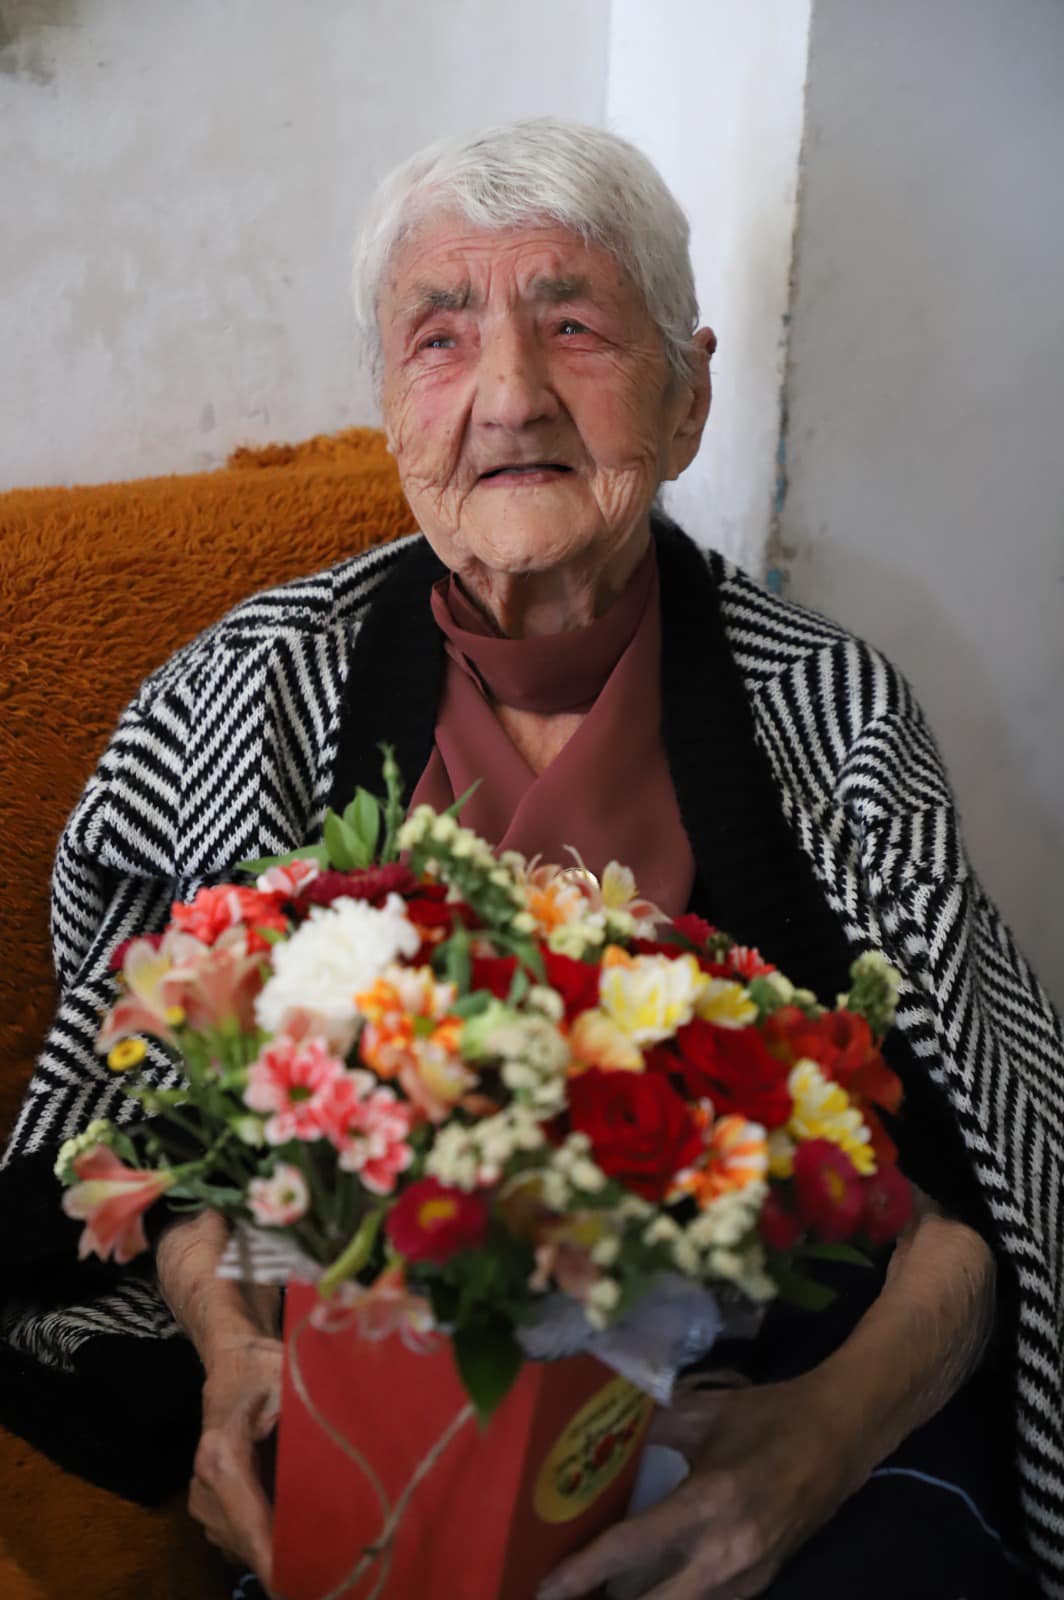 გენდერული თანასწორობის საბჭოს წევრებმა 100 წლის ქალბატონს მარიამობა მიულოცეს